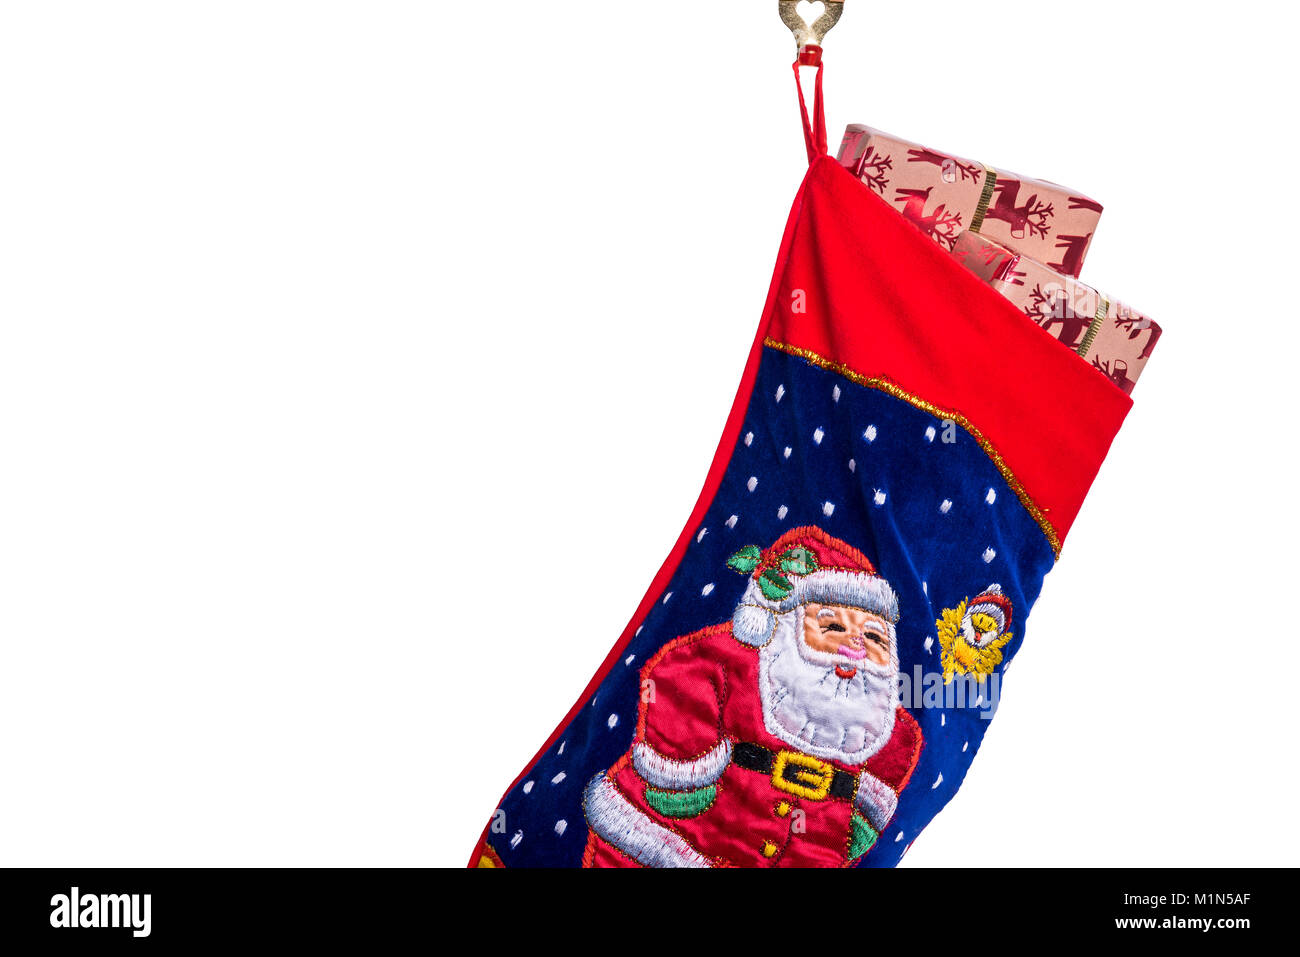 Los tradicionales de Navidad Navidad o almacenamiento, llena con envoltorio de regalo obsequios o regalos. Foto de stock